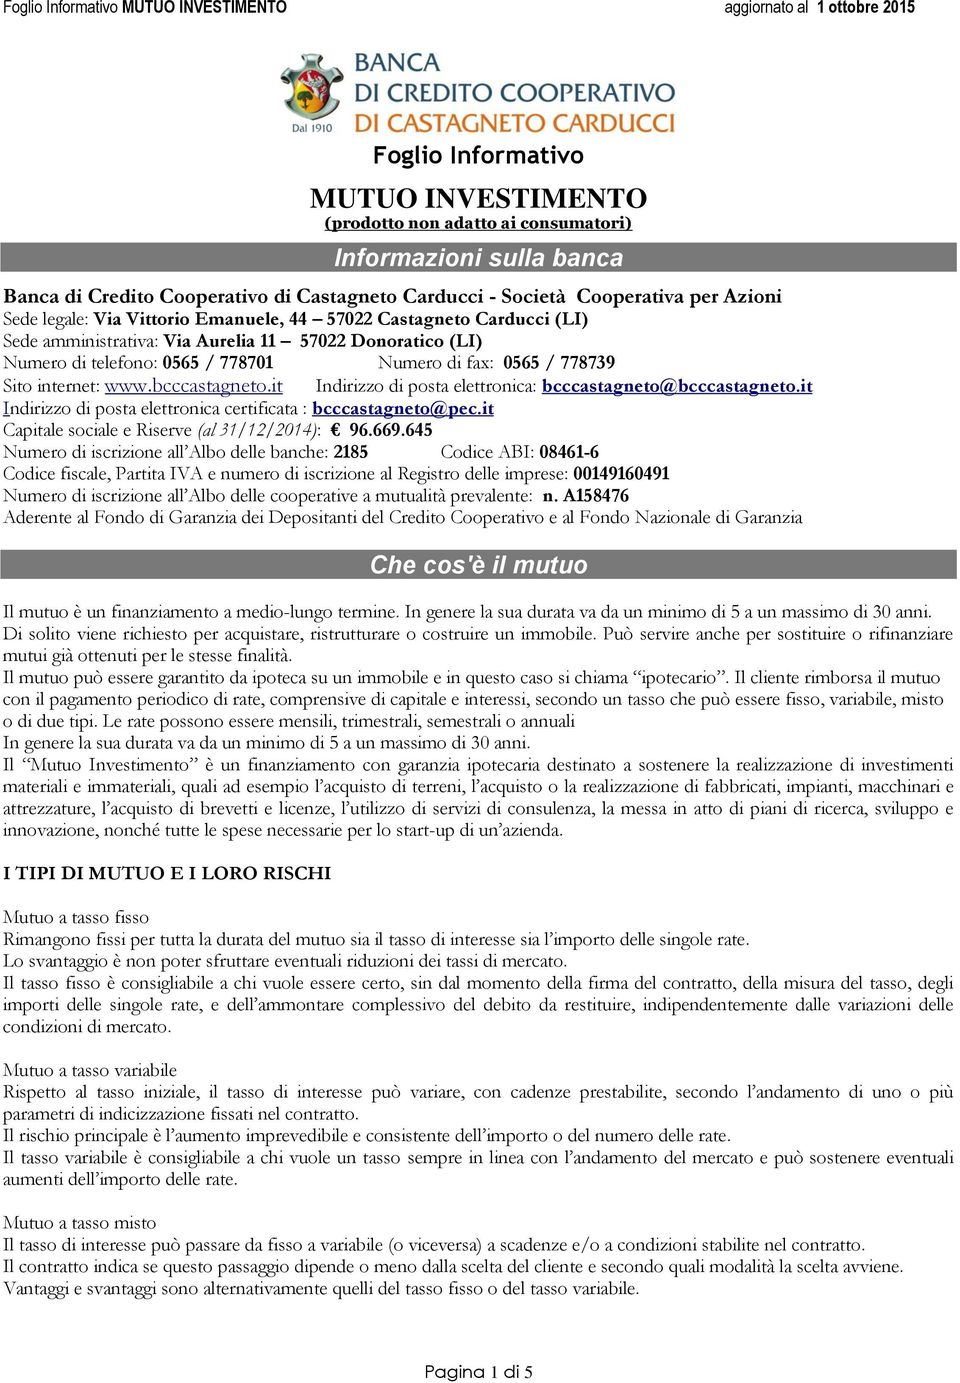 bcccastagneto.it Indirizzo di posta elettronica: bcccastagneto@bcccastagneto.it Indirizzo di posta elettronica certificata : bcccastagneto@pec.it Capitale sociale e Riserve (al 31/12/2014): 96.669.